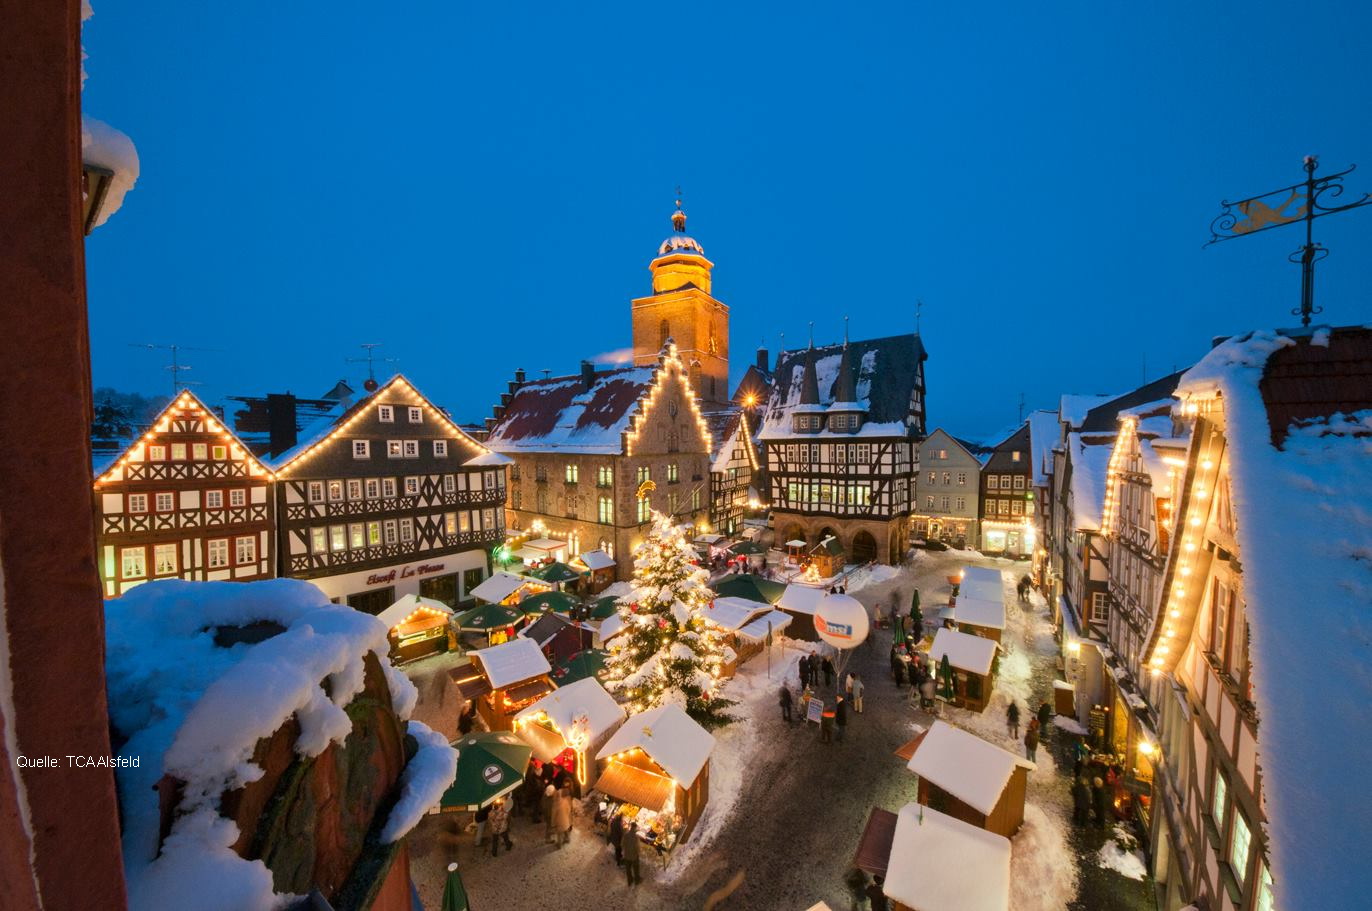 Weihnachtsmarkt in Alsfeld - Bild: TCA Alsfeld